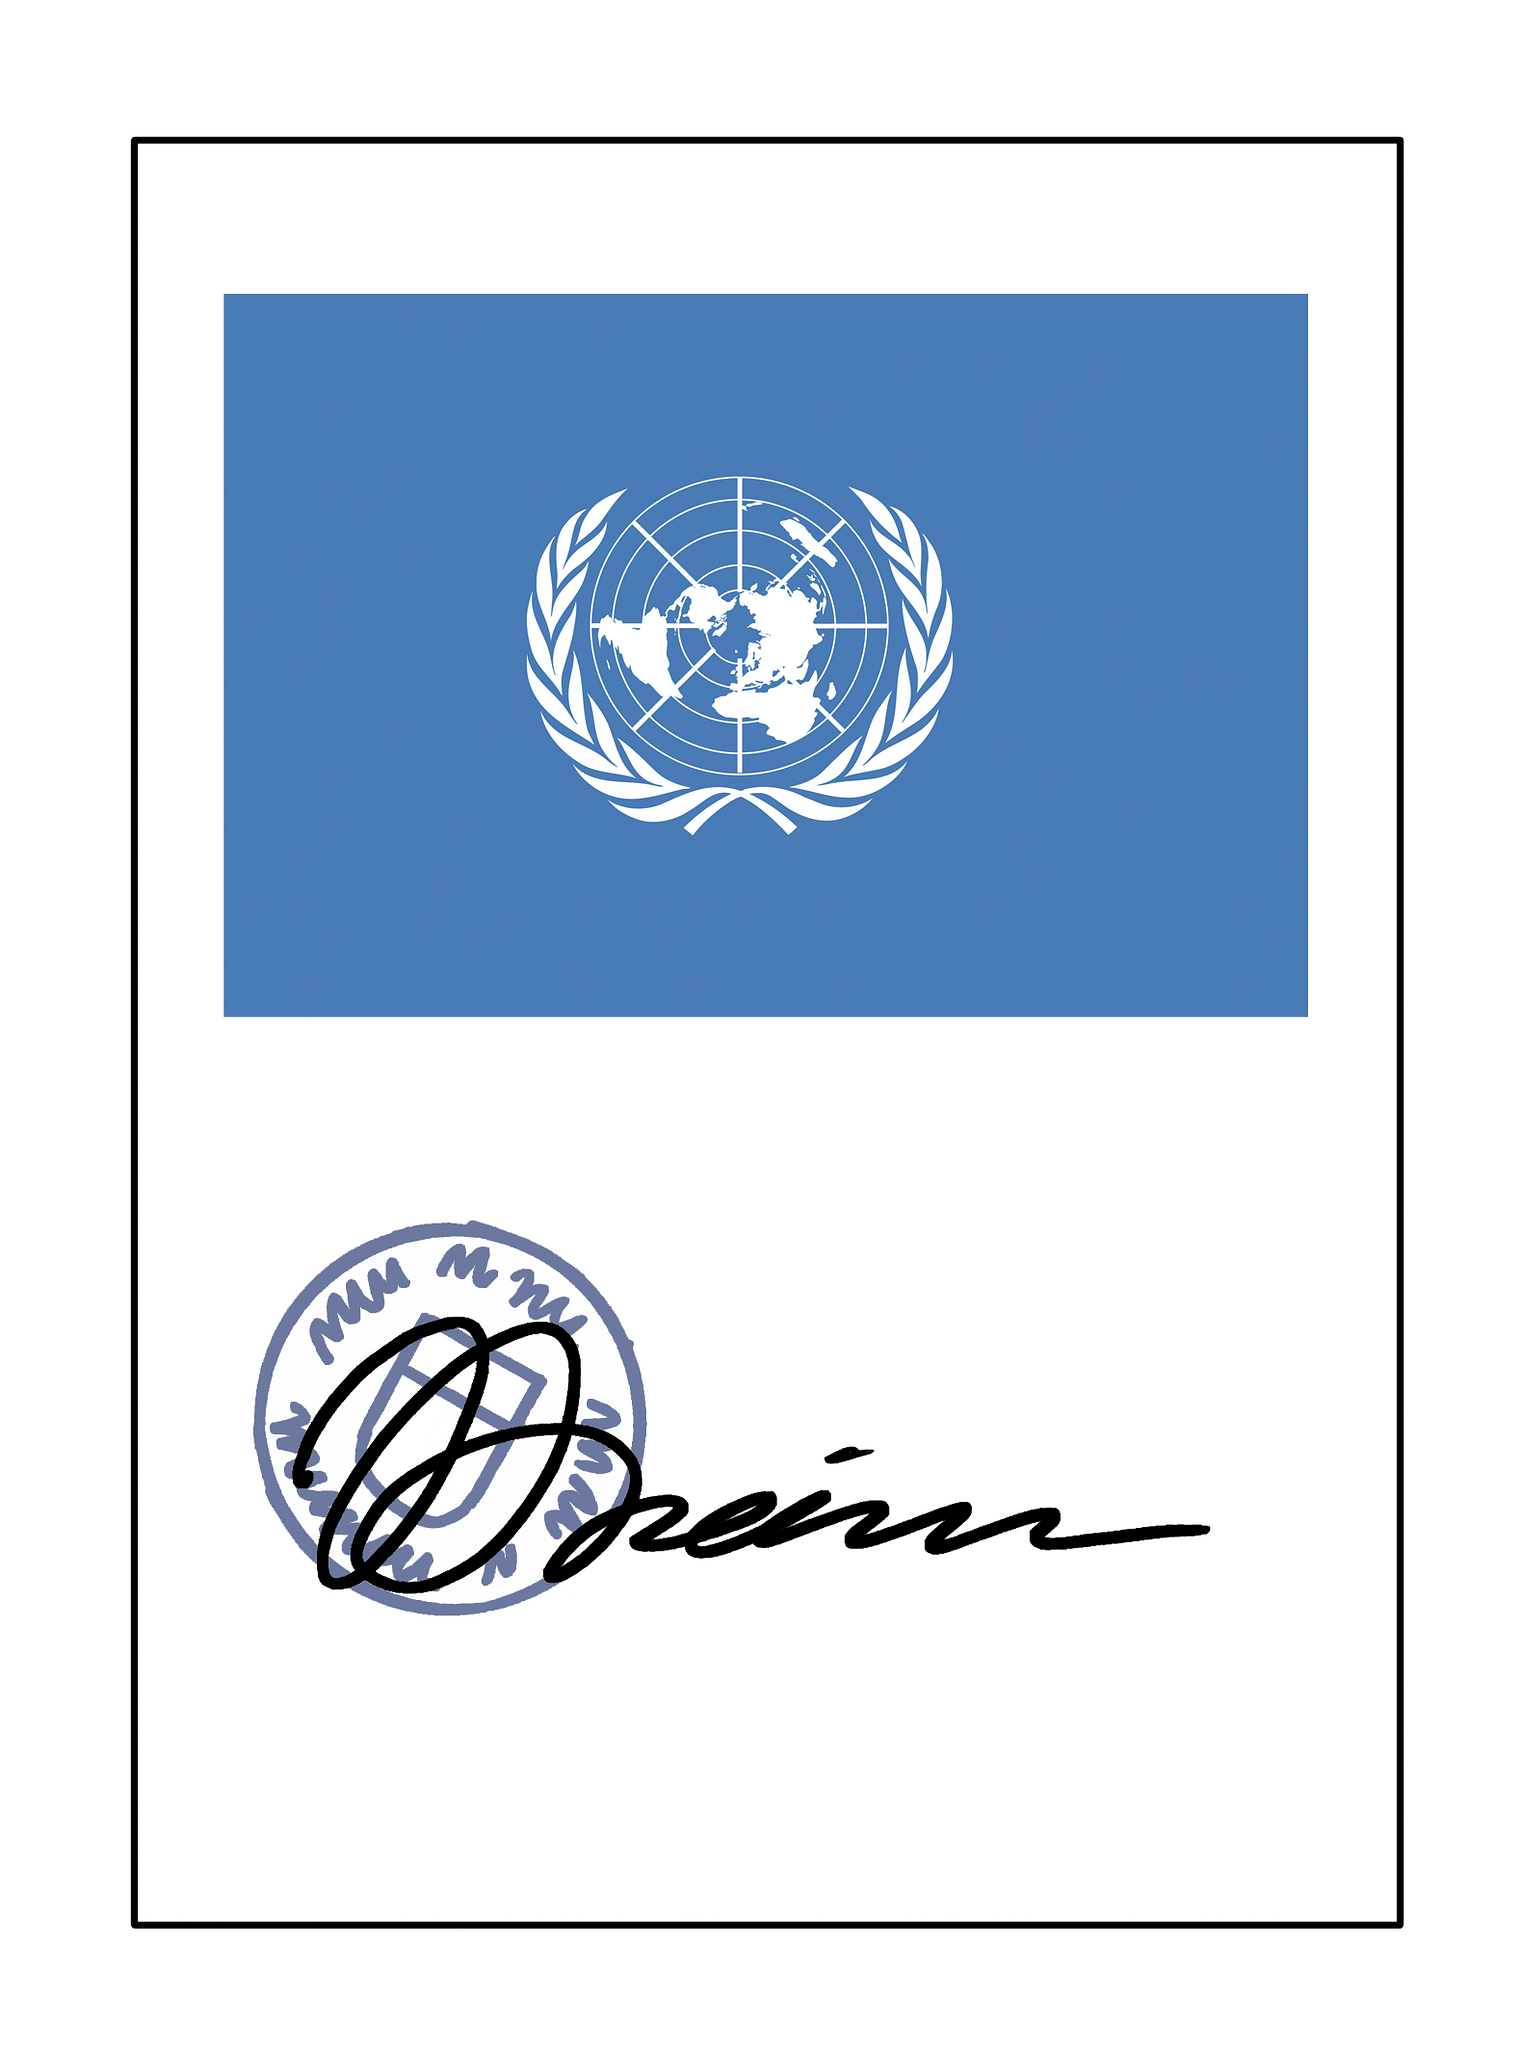 Dokument der UN-Behindertenrechtskonvention, oben mit dem Logo auf blauem Grund und darunter mit Stempel und Unterschrift 